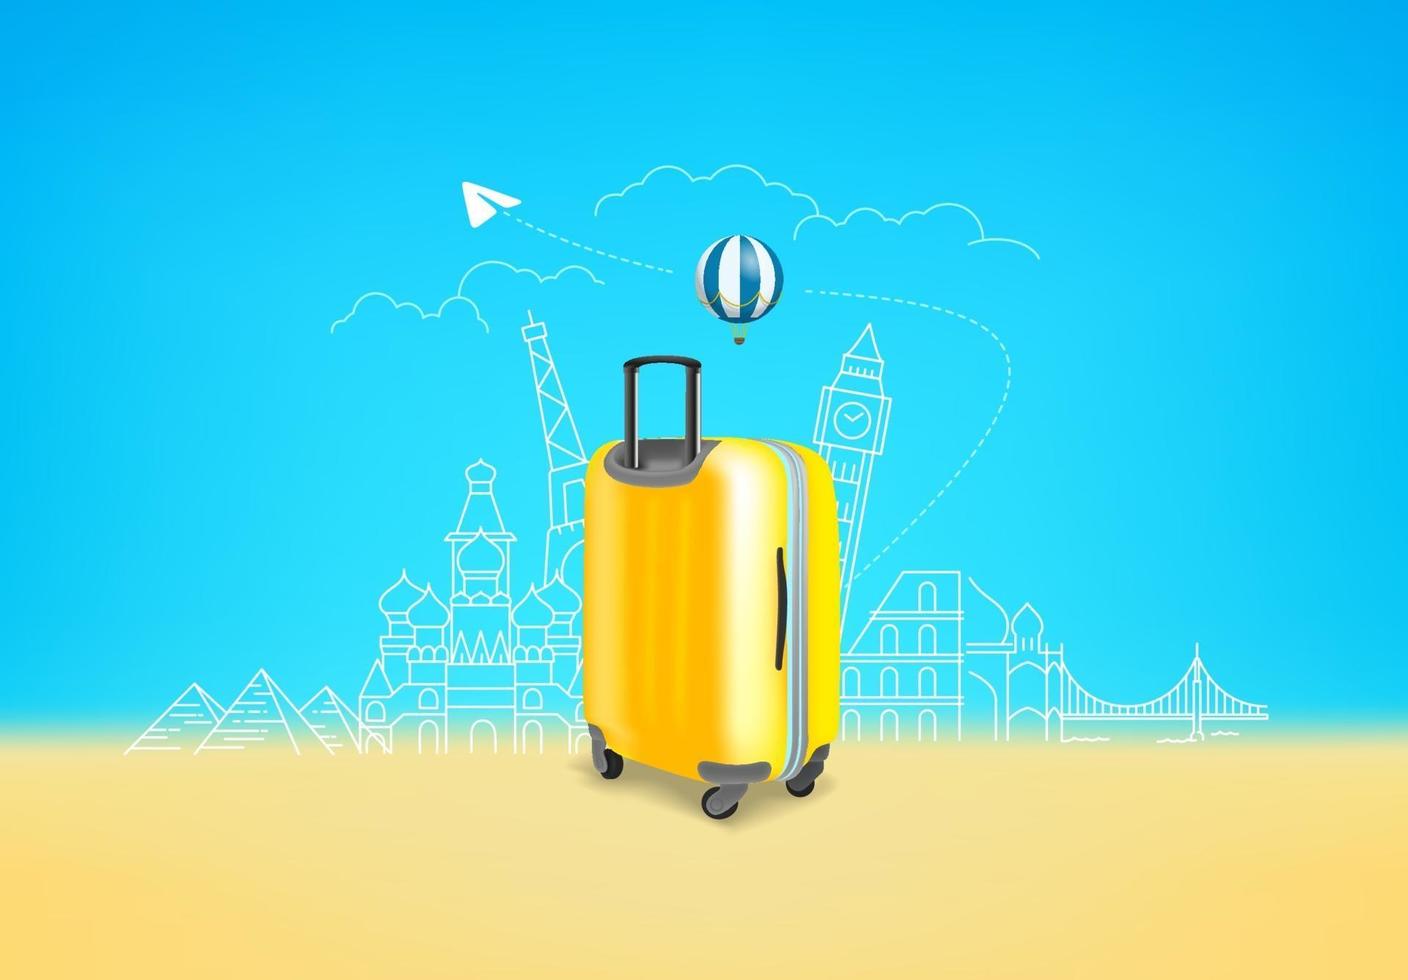 valigia gialla fotorealistica con diversi luoghi famosi di viaggio vettore